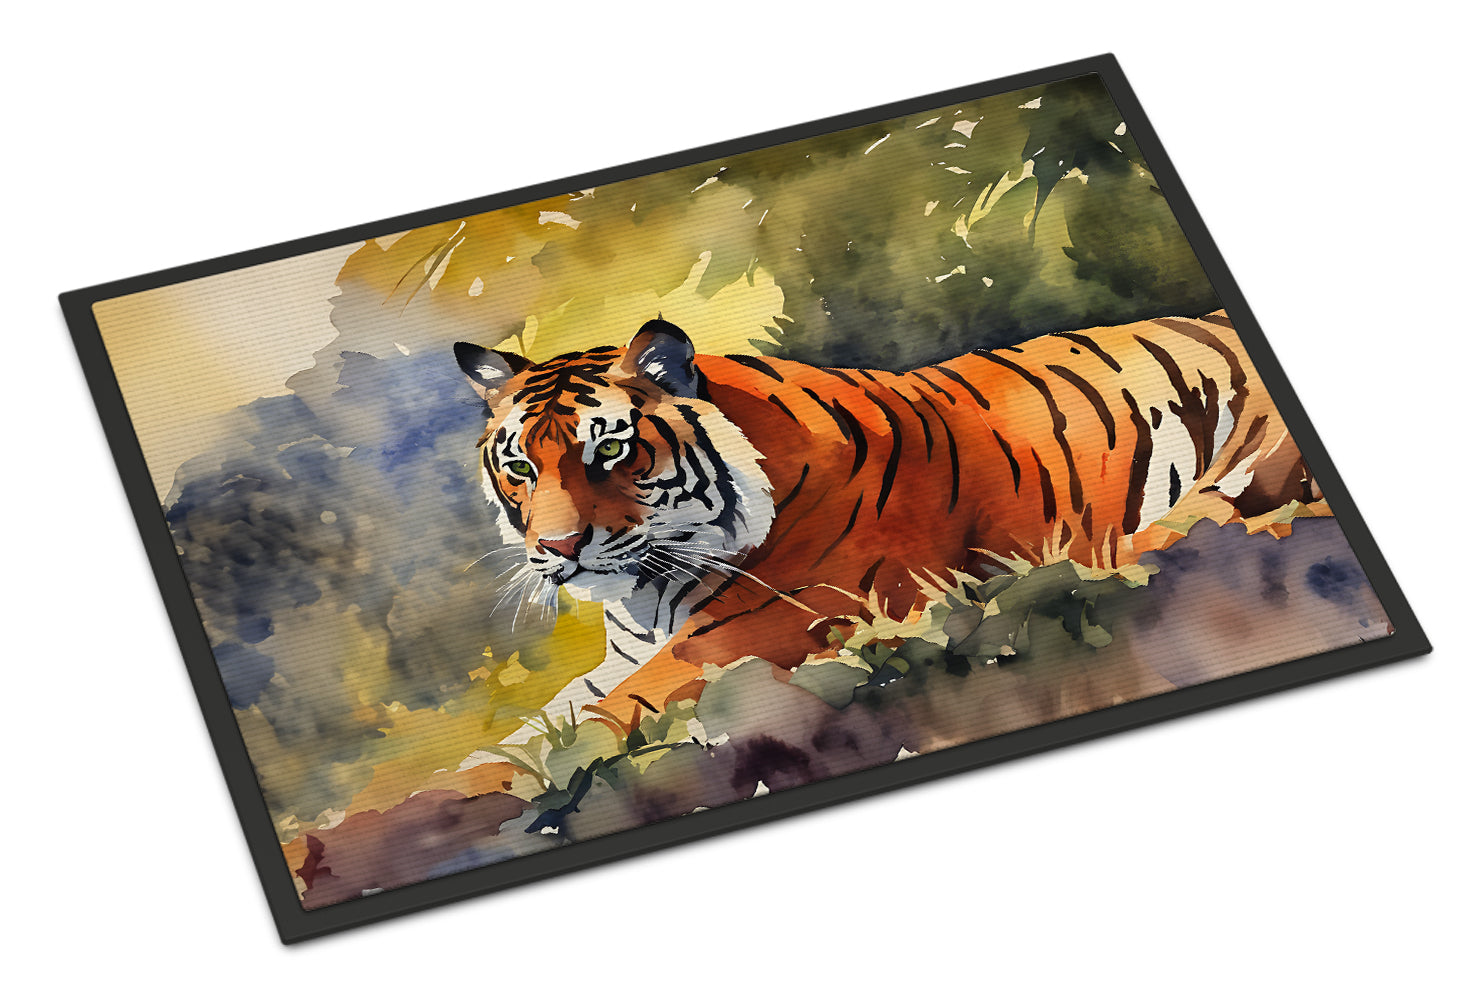 Buy this Bengal Tiger Doormat